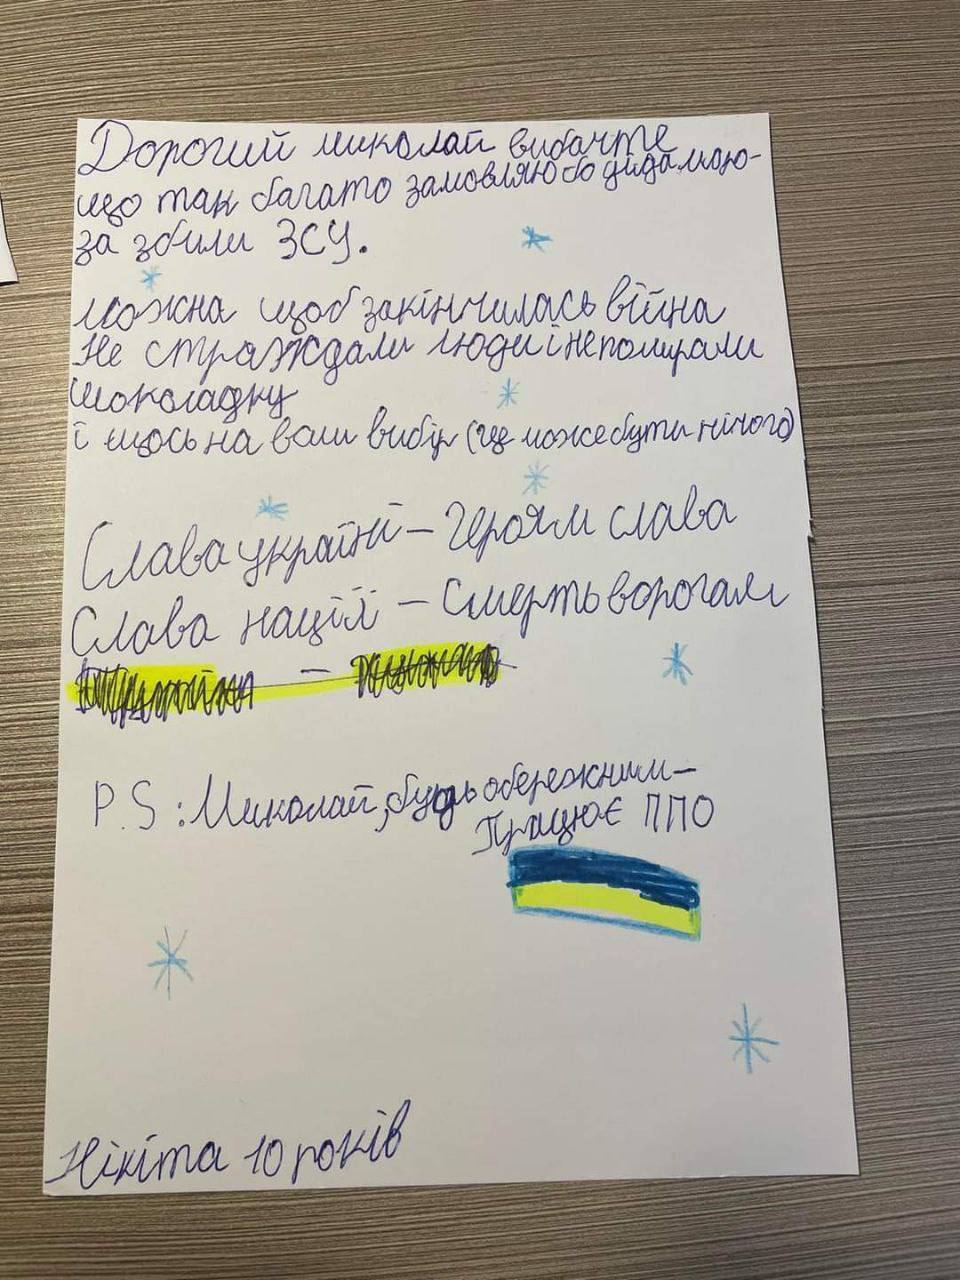 Українські діти просять у Святого Миколая перемоги для України